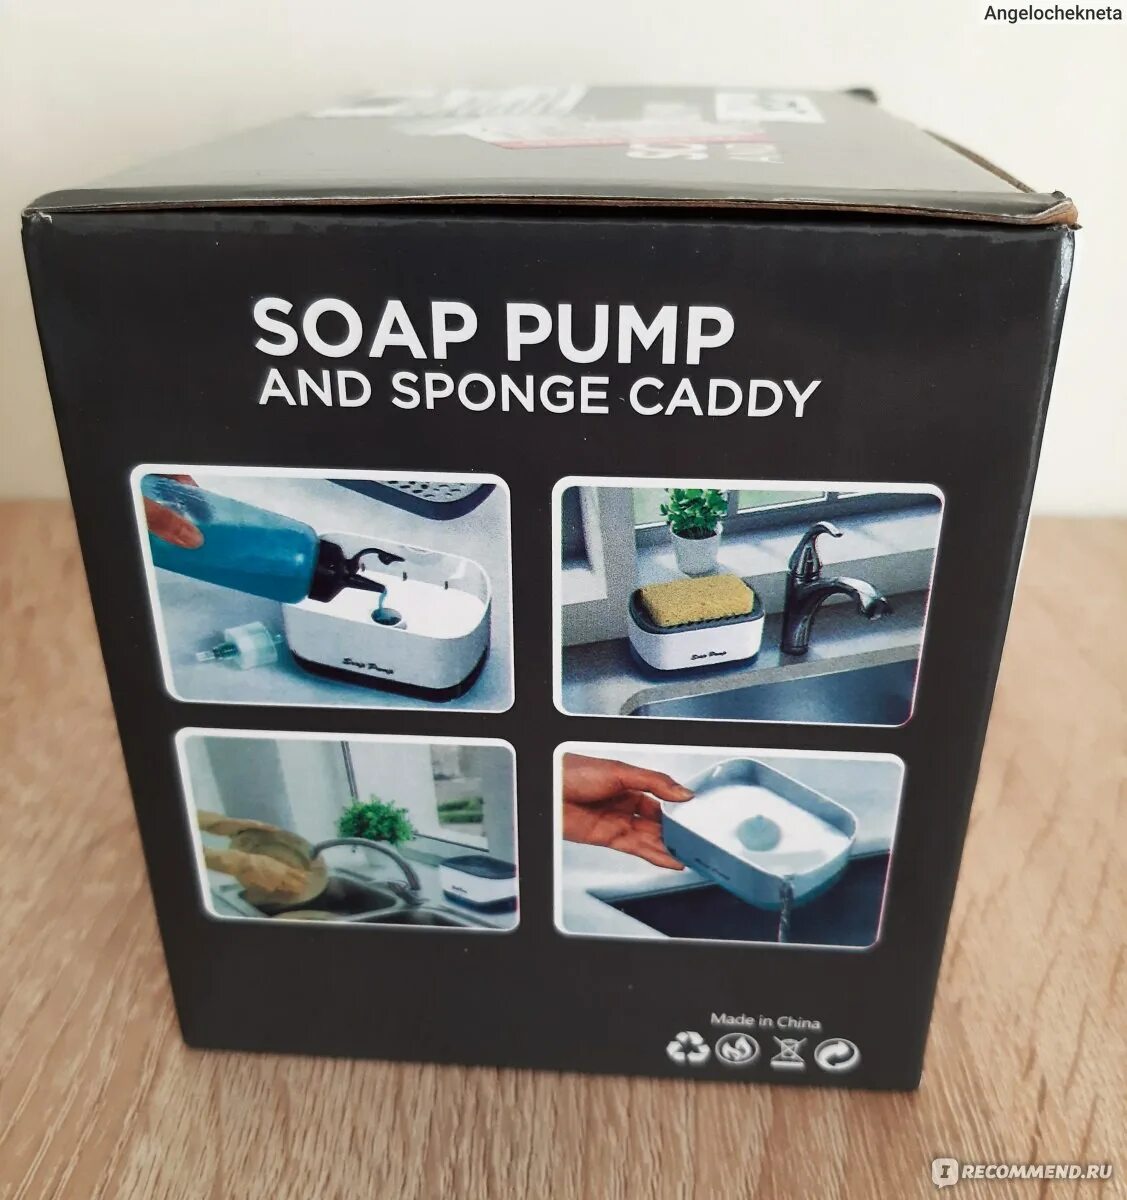 Soap Pump and Sponge Caddy. Сборка Soap Pump and Sponge Caddy. Soap Pump and Sponge Caddy инструкция. Soap Pump and Sponge Caddy комплектации.